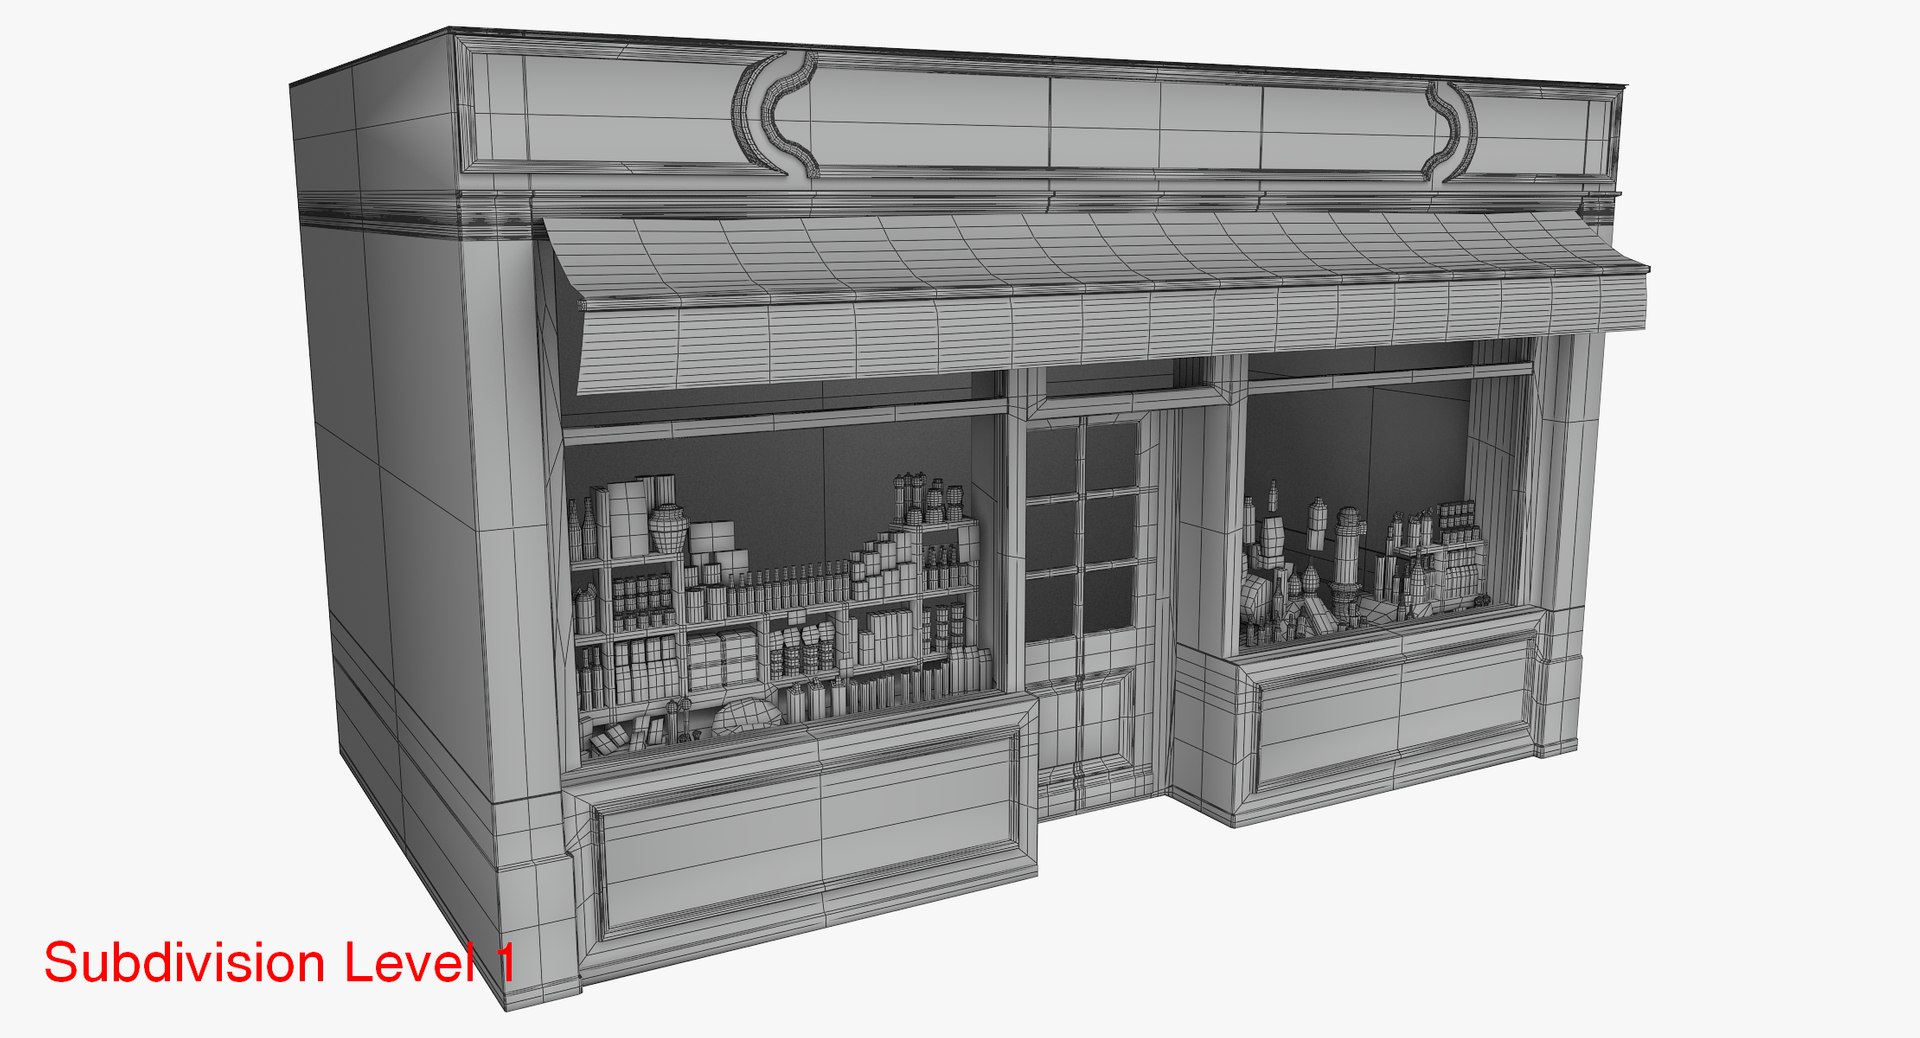 modèle 3D de Kit de construction des rues de la ville - TurboSquid 1050457